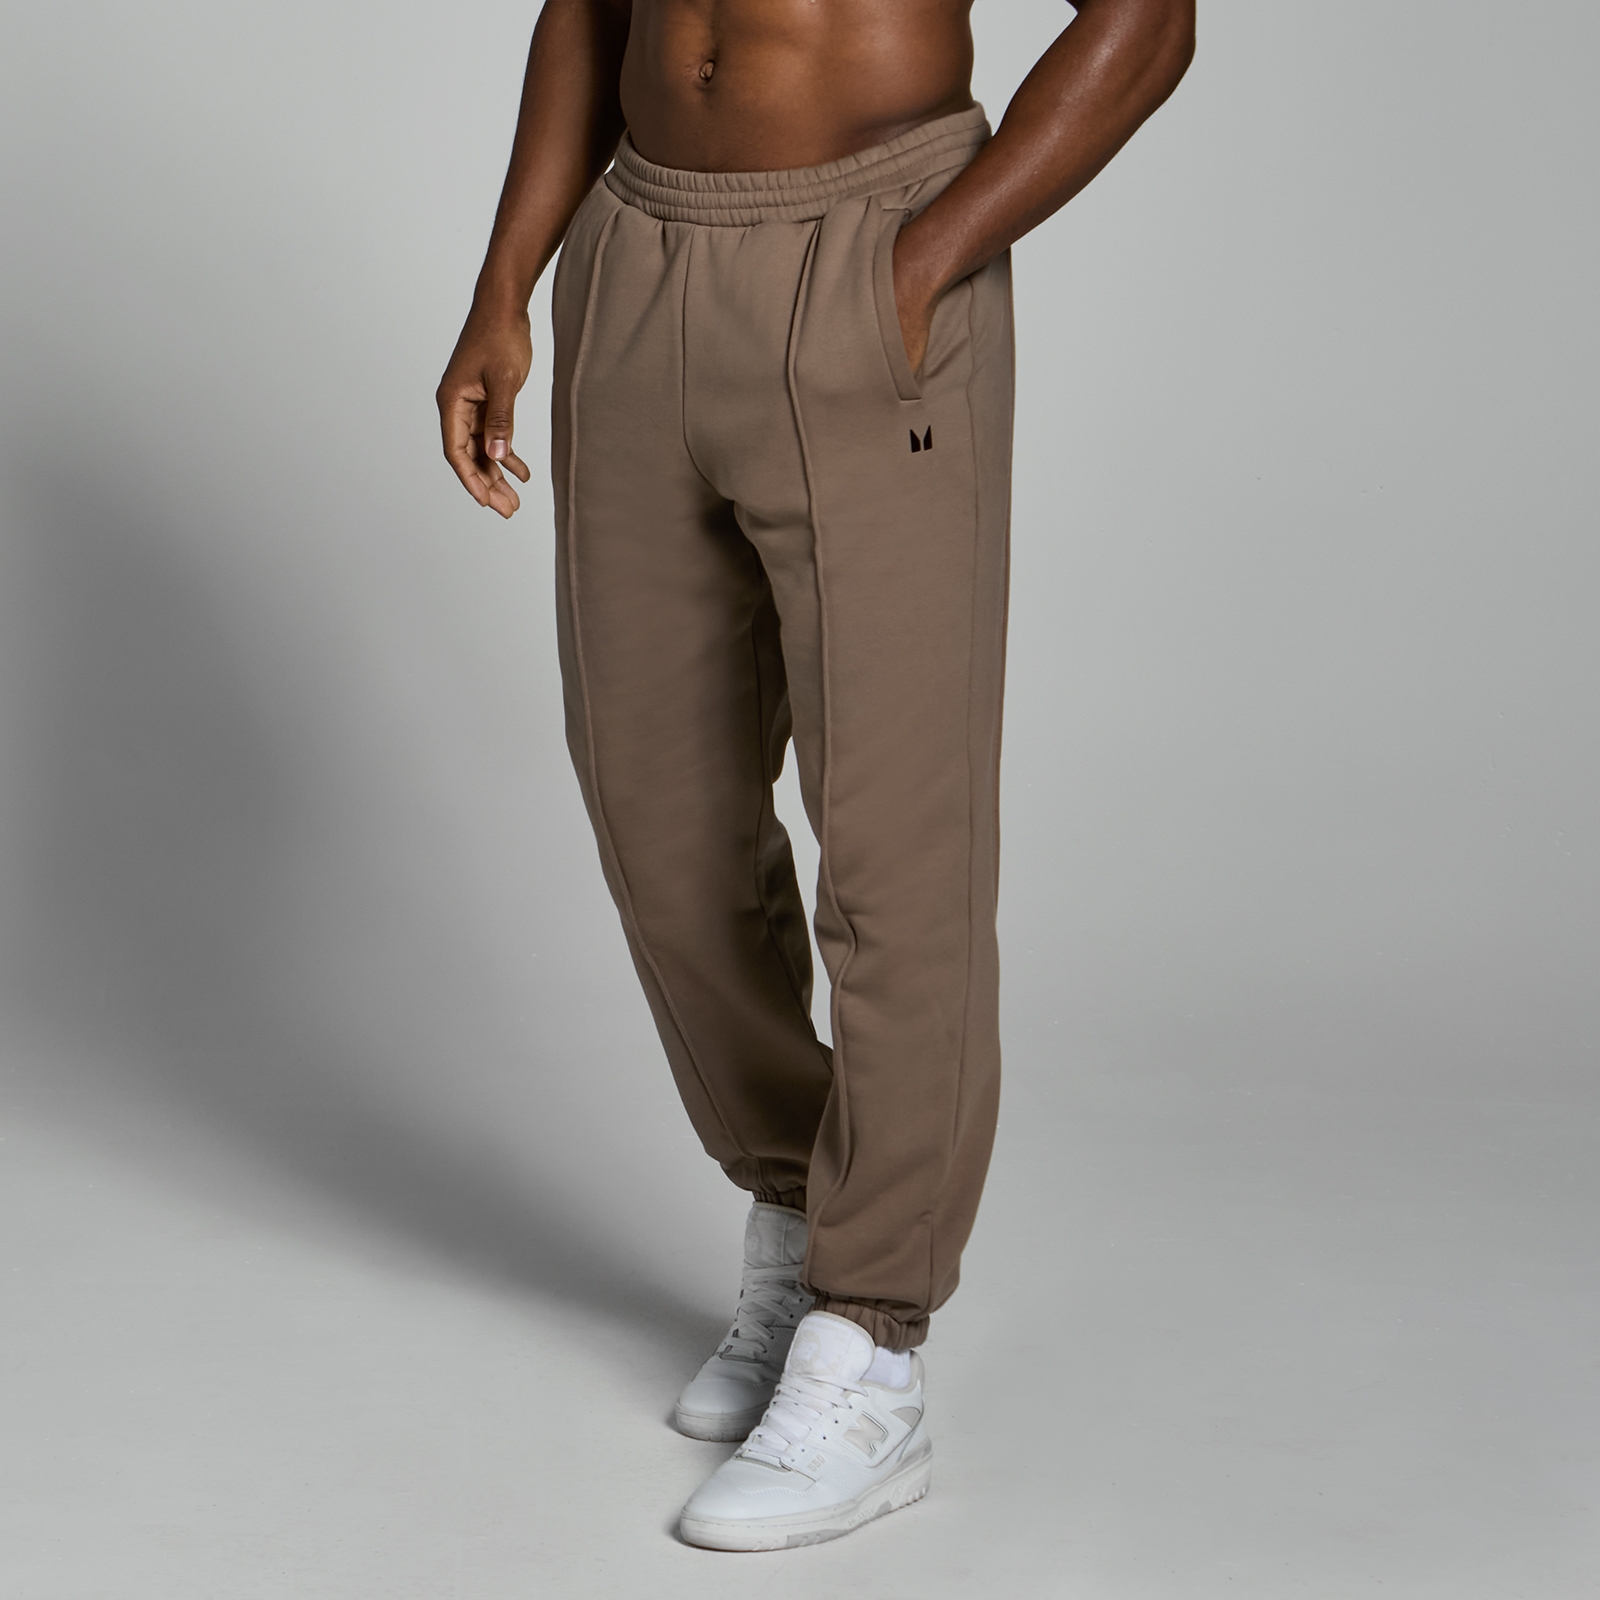 Image of Pantaloni da jogging oversize MP Lifestyle da uomo - Marrone chiaro - XXL